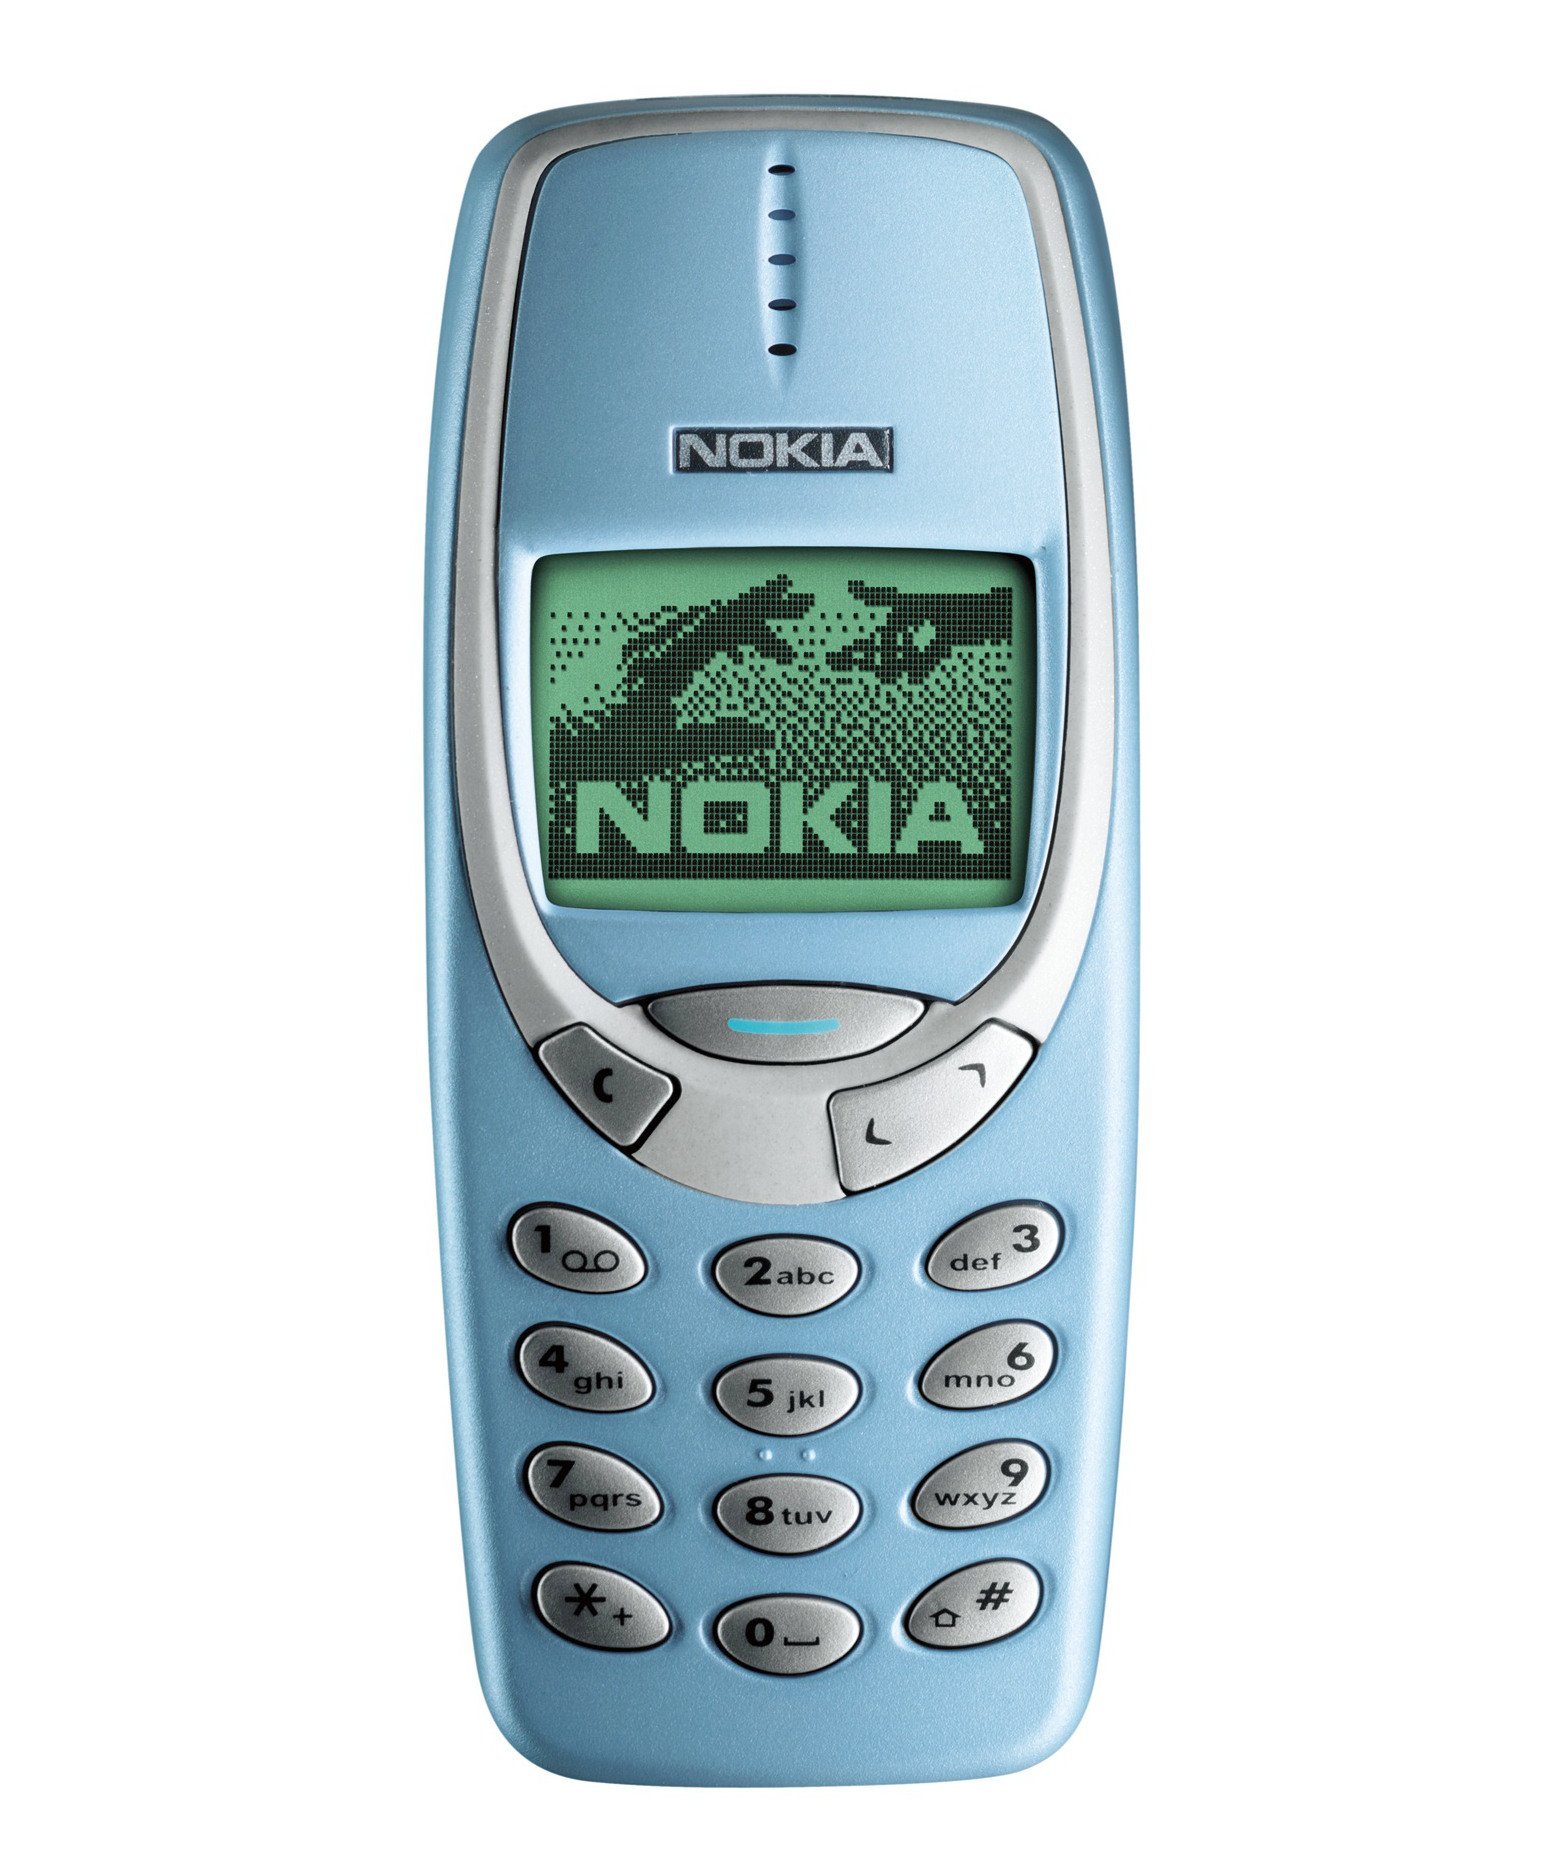 nokia-3310-v-bava-a-cena-mobilenet-cz